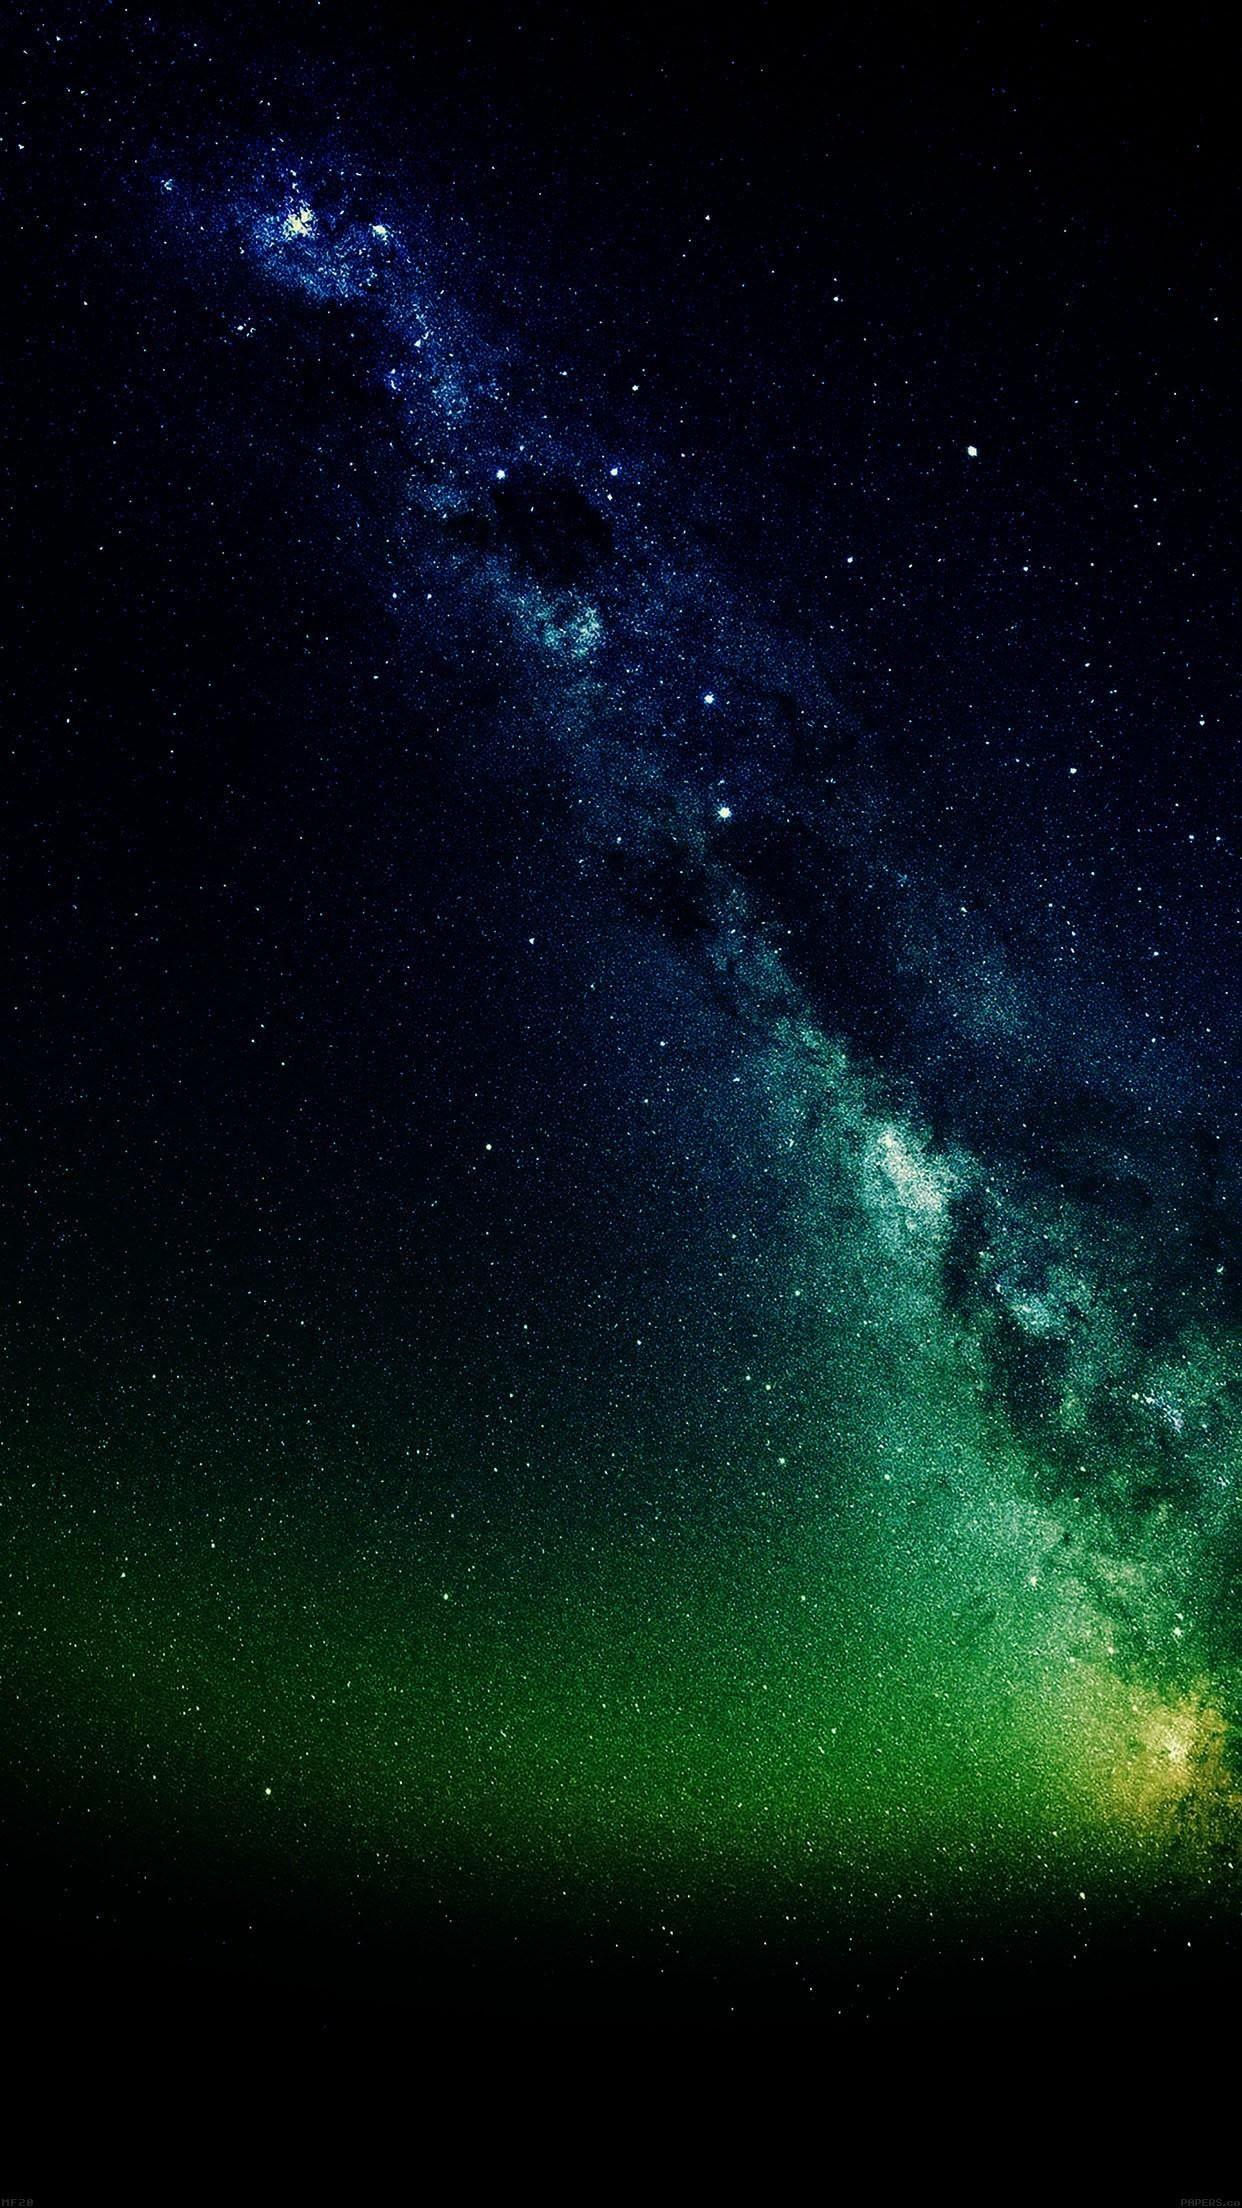 space wallpaper 4k. Fotos de galáxias, Foto de fundo tumblr, Papel de parede de astronauta